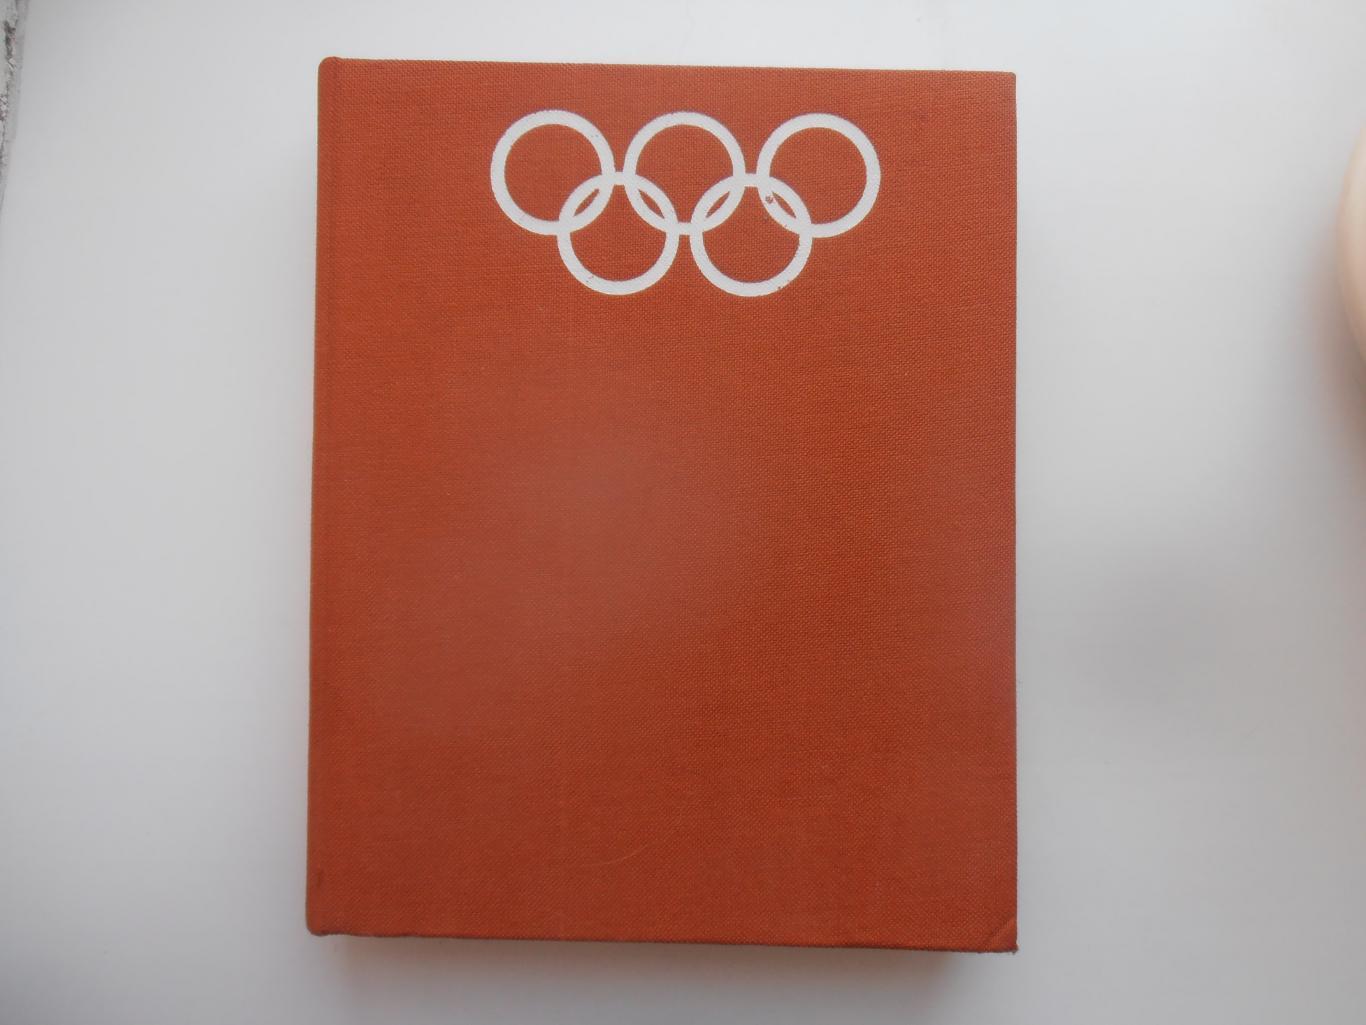 Олимпийские игры Монреаль 1976 Олимпиада-76 Инсбрук 1976 Немецкий язык Берлин-77